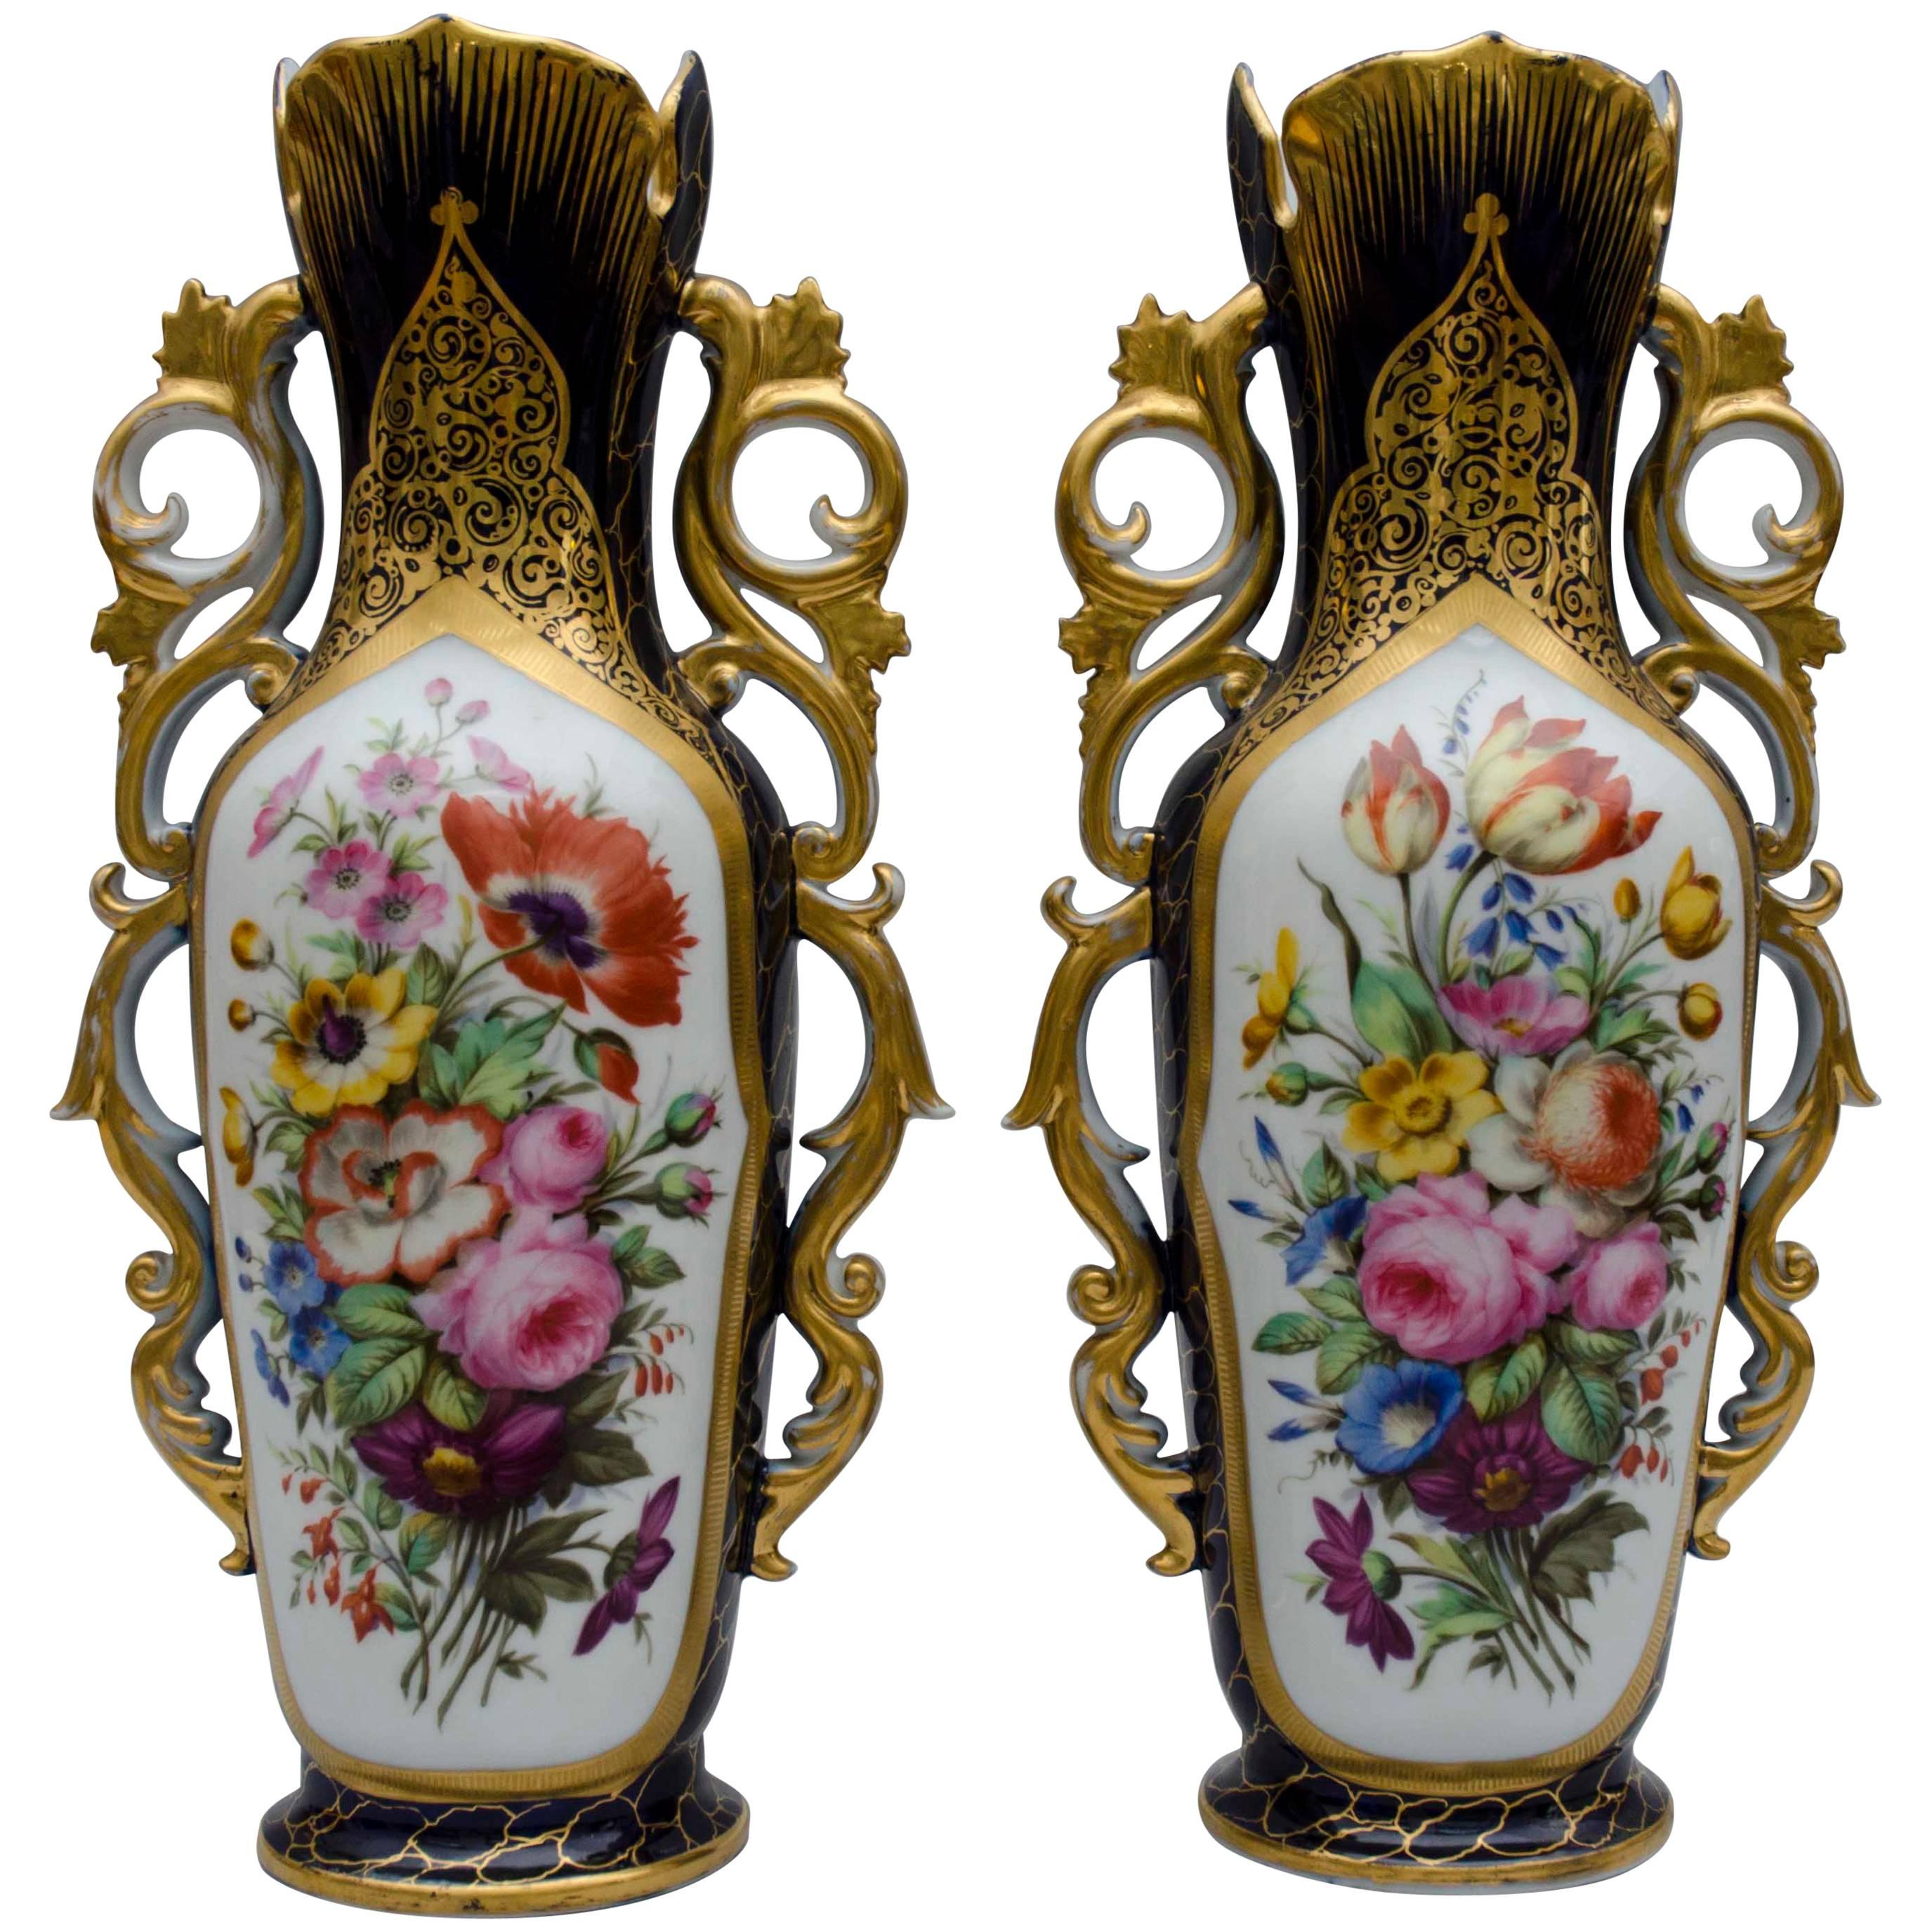 Mid-19th Century, Cobalt Bleu and Flowers, Porcelain Vases, Valentine, France For Sale